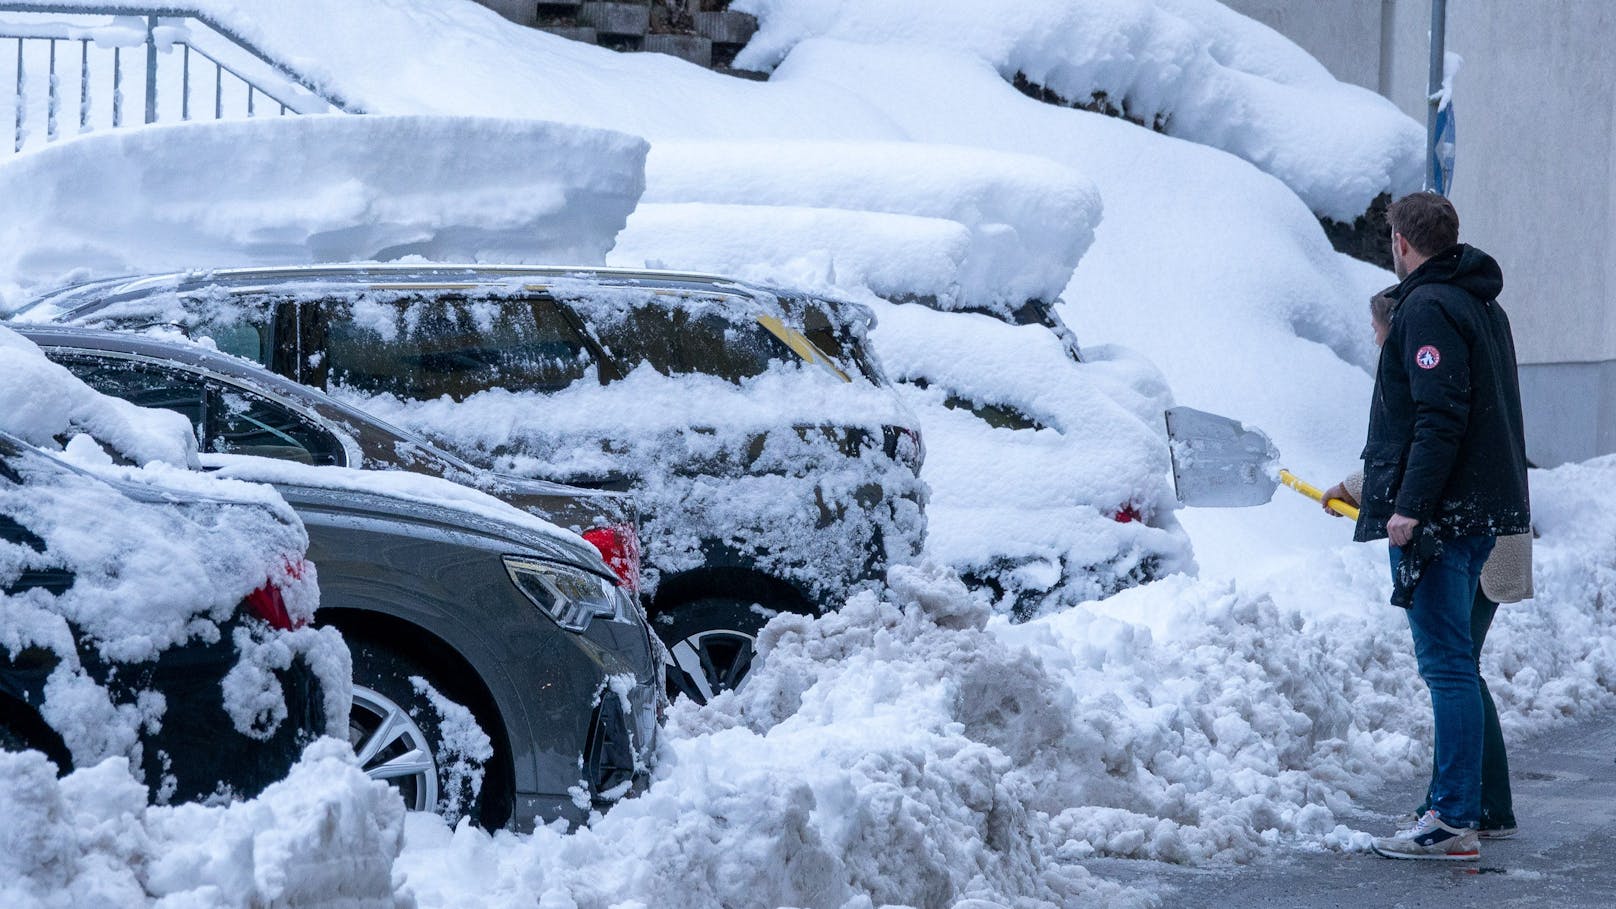 Wetter-Sturz bringt halben Meter Schnee nach Österreich